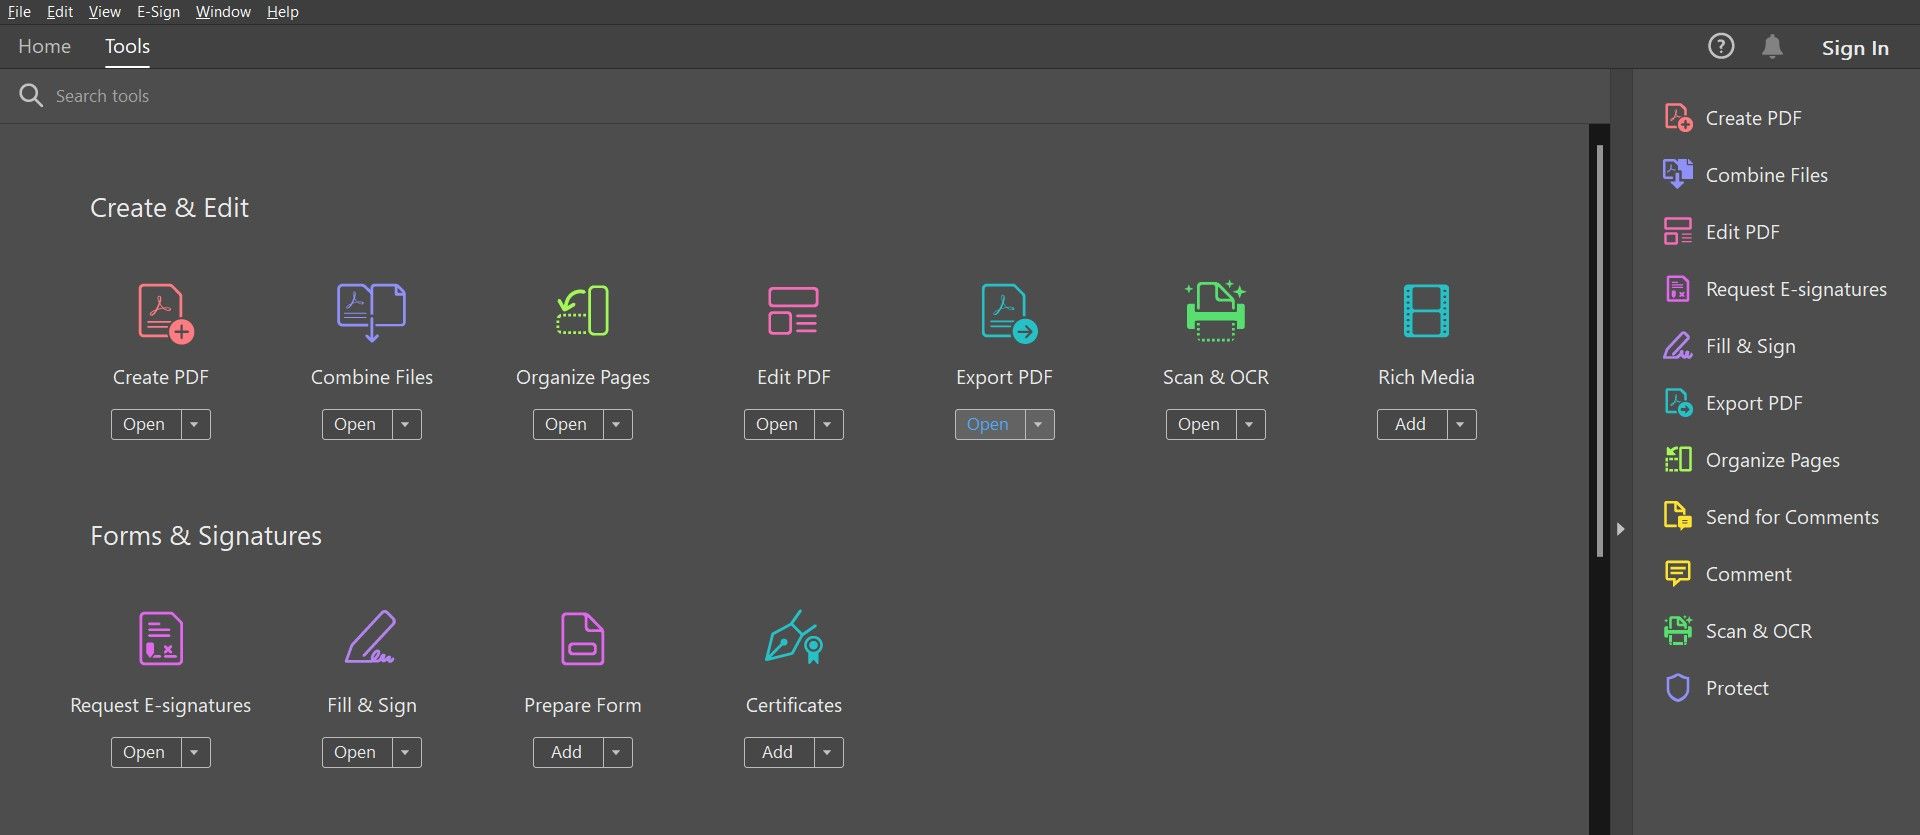 Tools menu in Adobe Acrobat DC